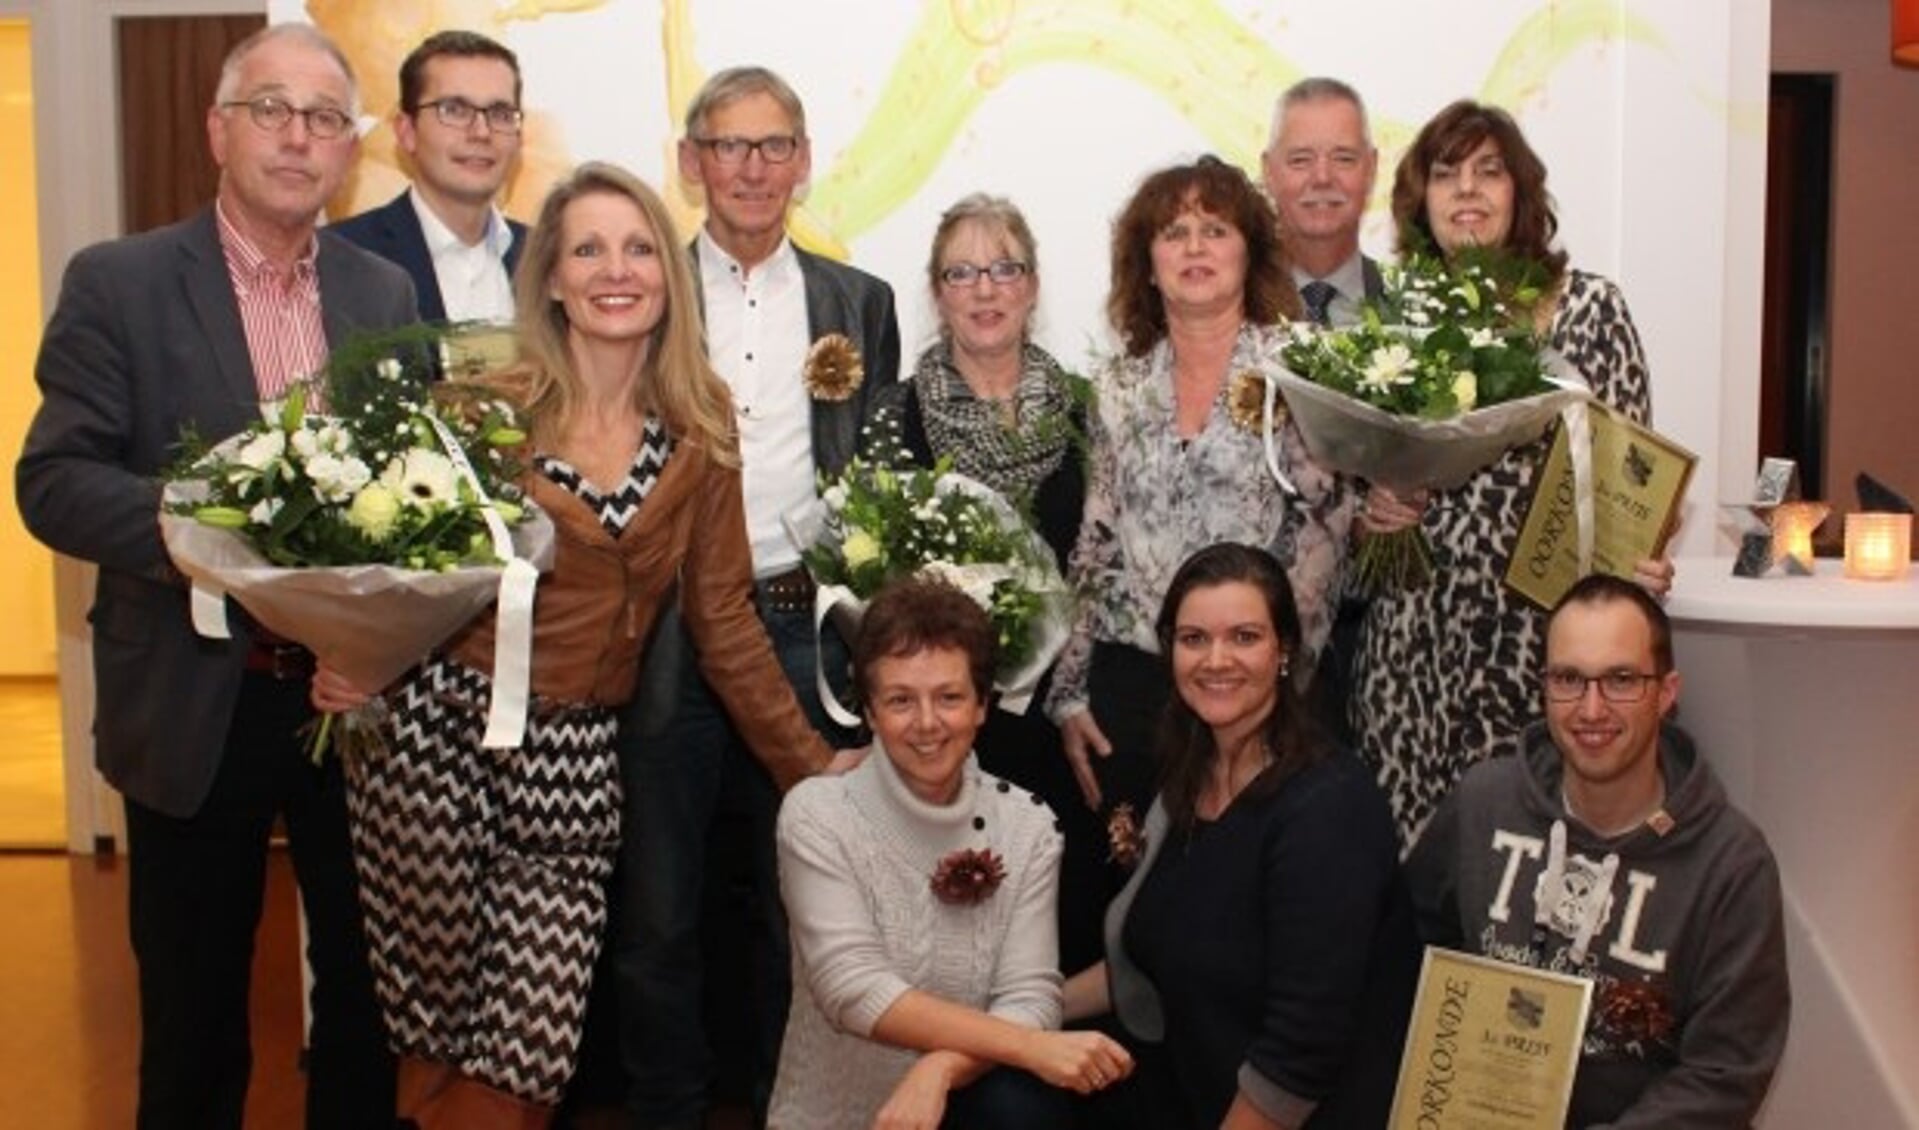 De vertegenwoordigers van de Coöperatieve Vereniging Dorp66 Polsbroek samen met de andere winnaars en wethouder Johan van Everdingen. FOTO: gemeente Lopik